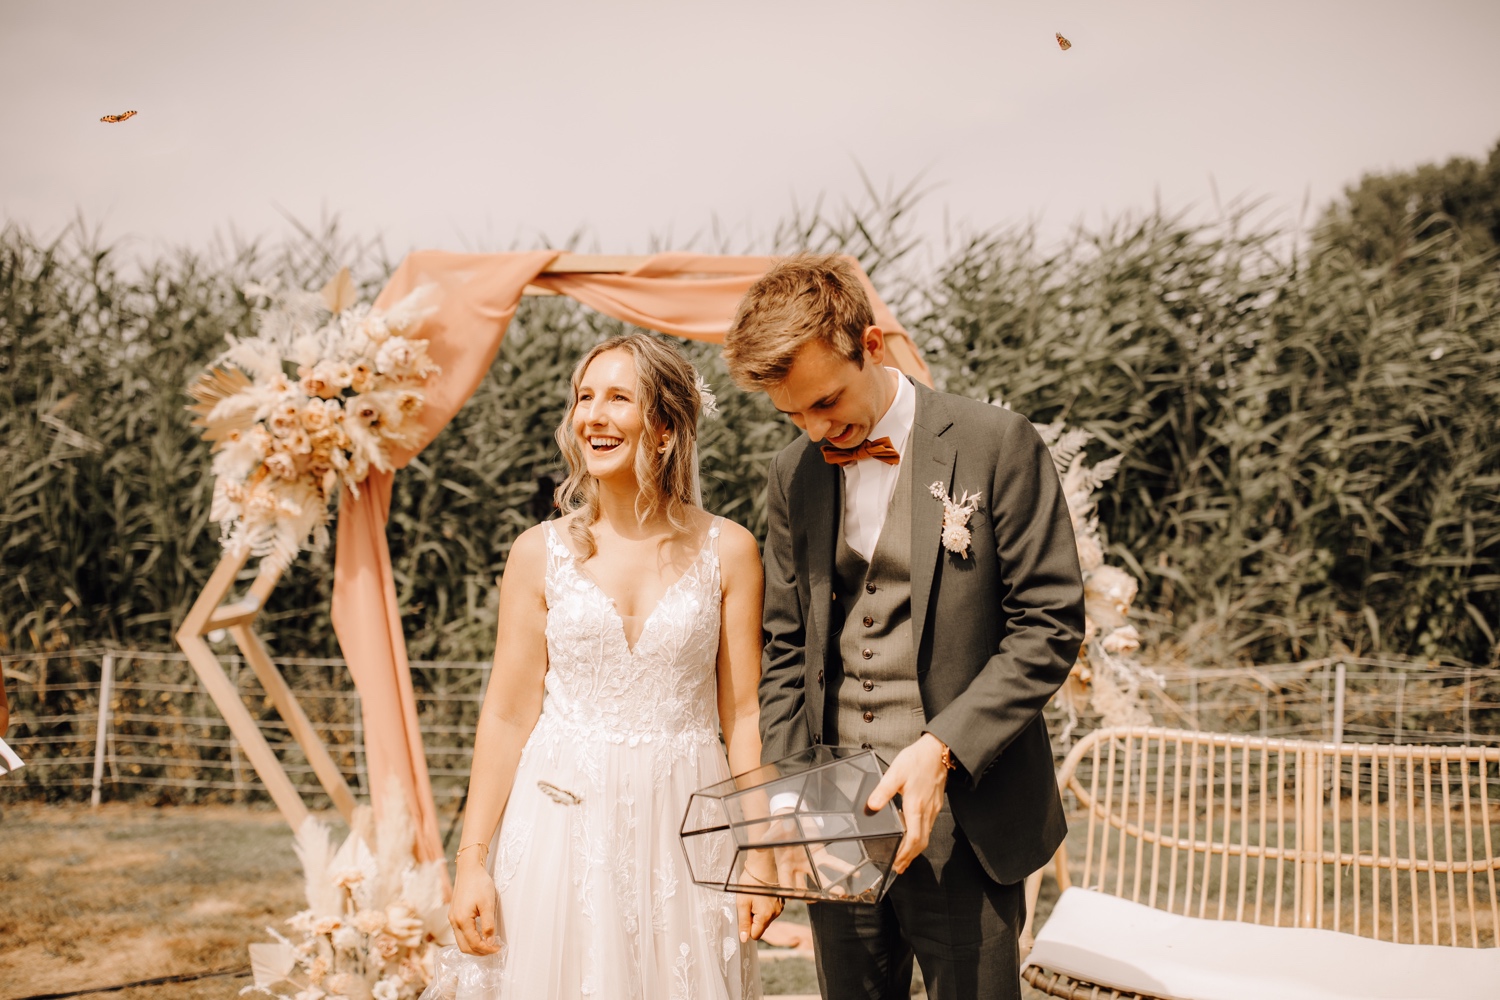 Huwelijksfotograaf Limburg - bruidspaar laat vlinders los tijdens ceremonie